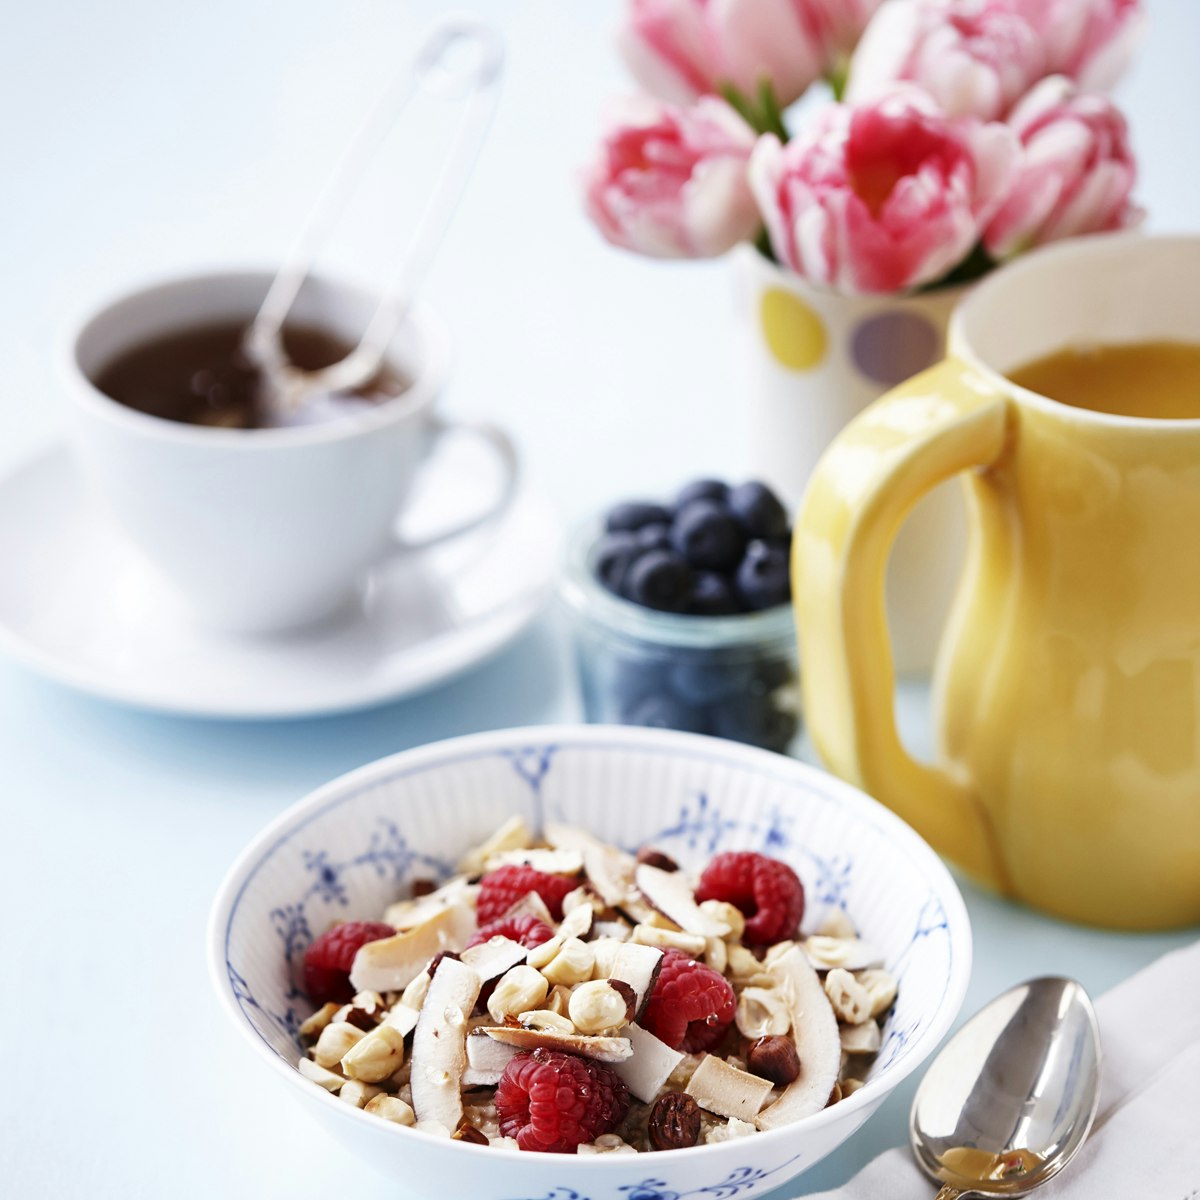 Billede af morgenmad med te og blomster